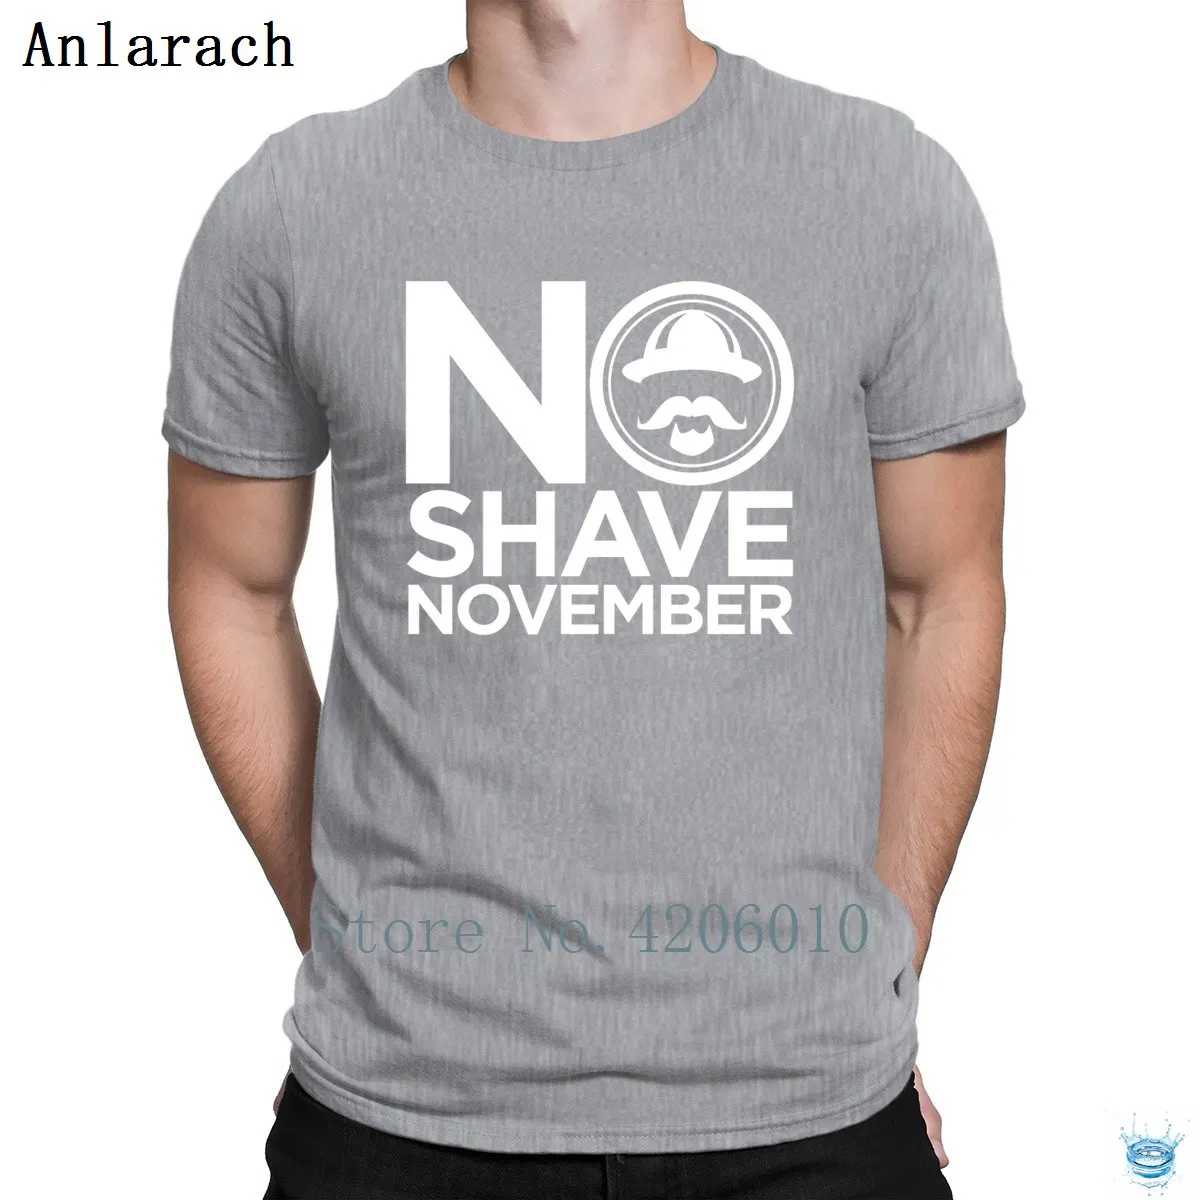 Традиционная футболка с надписью «No Shave November», фирменная графическая летняя стильная футболка для мужчин в стиле хип-хоп, хлопок, стильный дизайн - Цвет: Gray